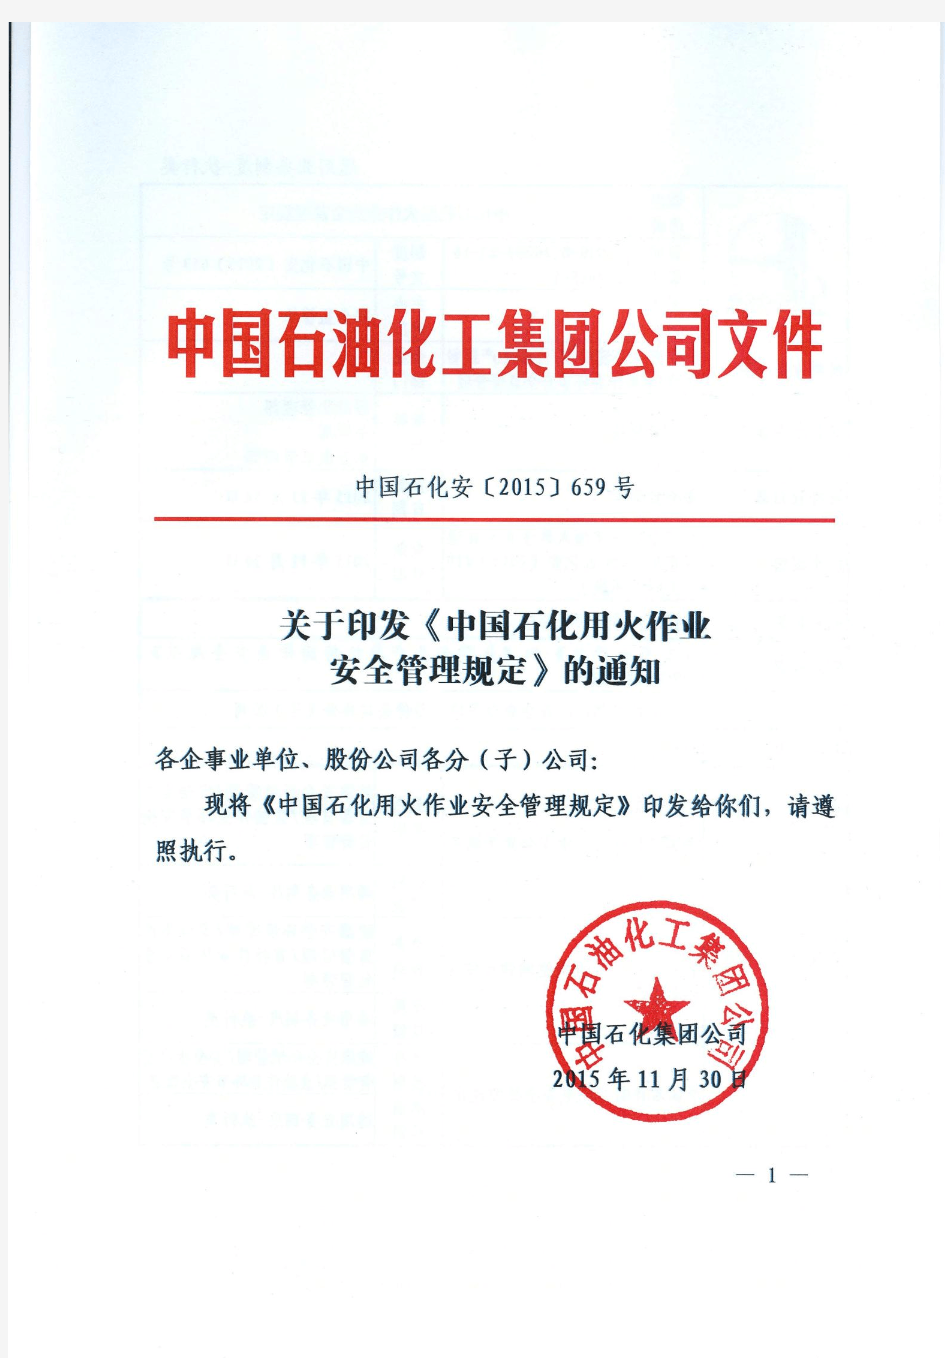 中国石化用火作业安全管理规定(中国石化安【2015】659号)